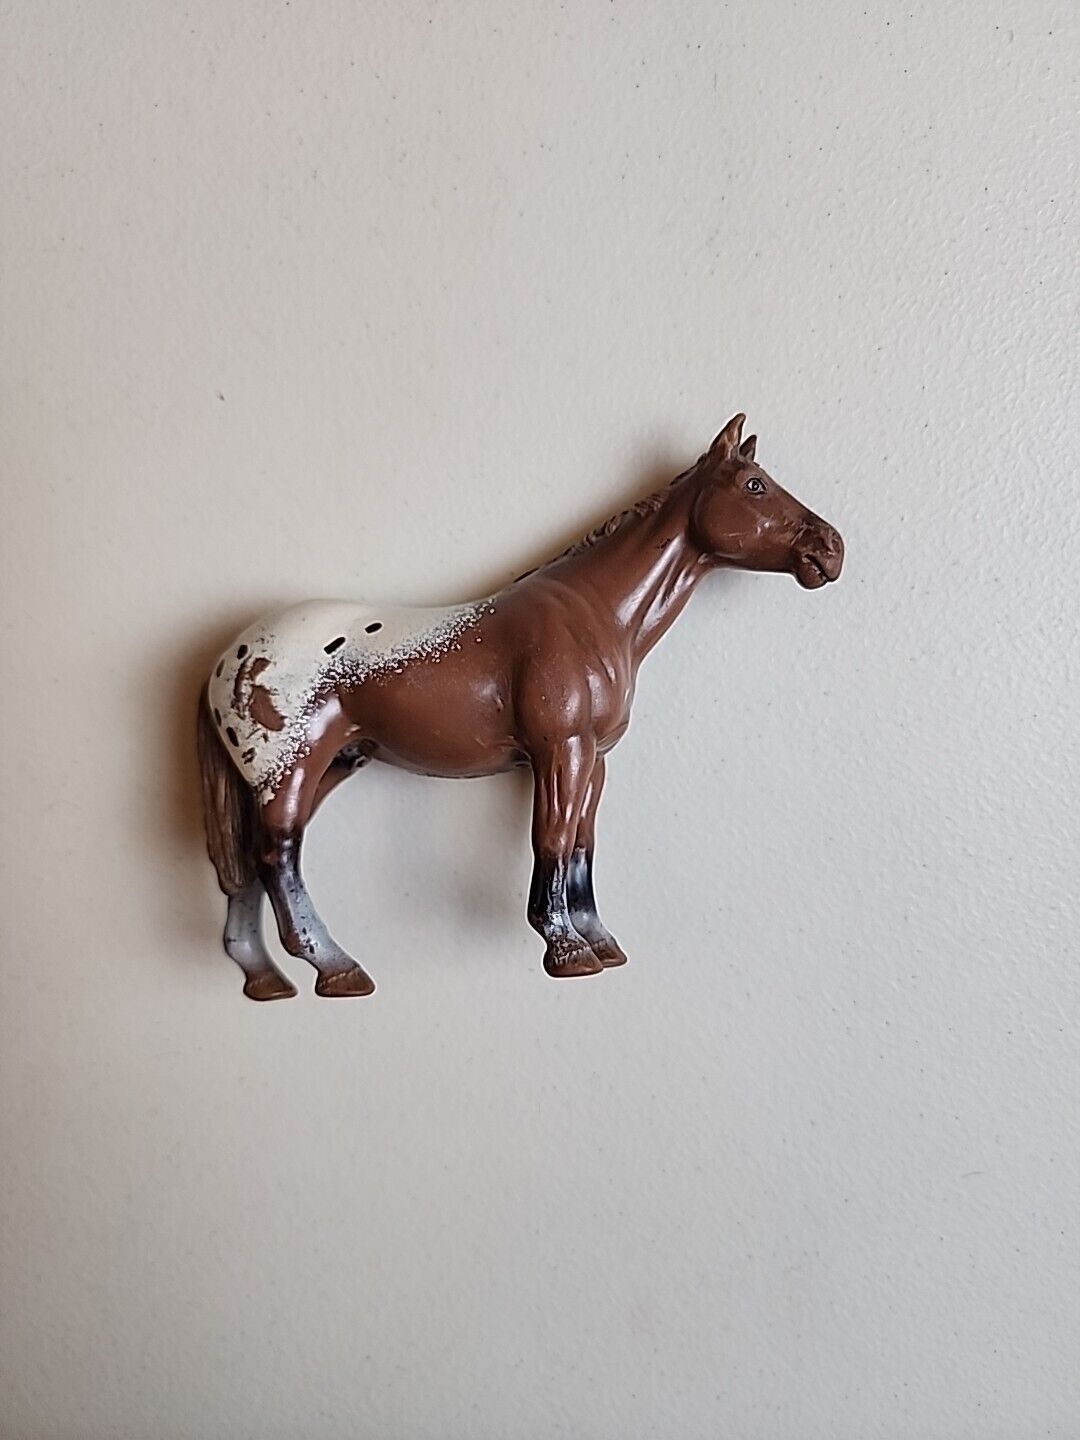 Schleich 13271 APPALOOSA STALLION Horse Figure 2002  Rare Retired Vintage